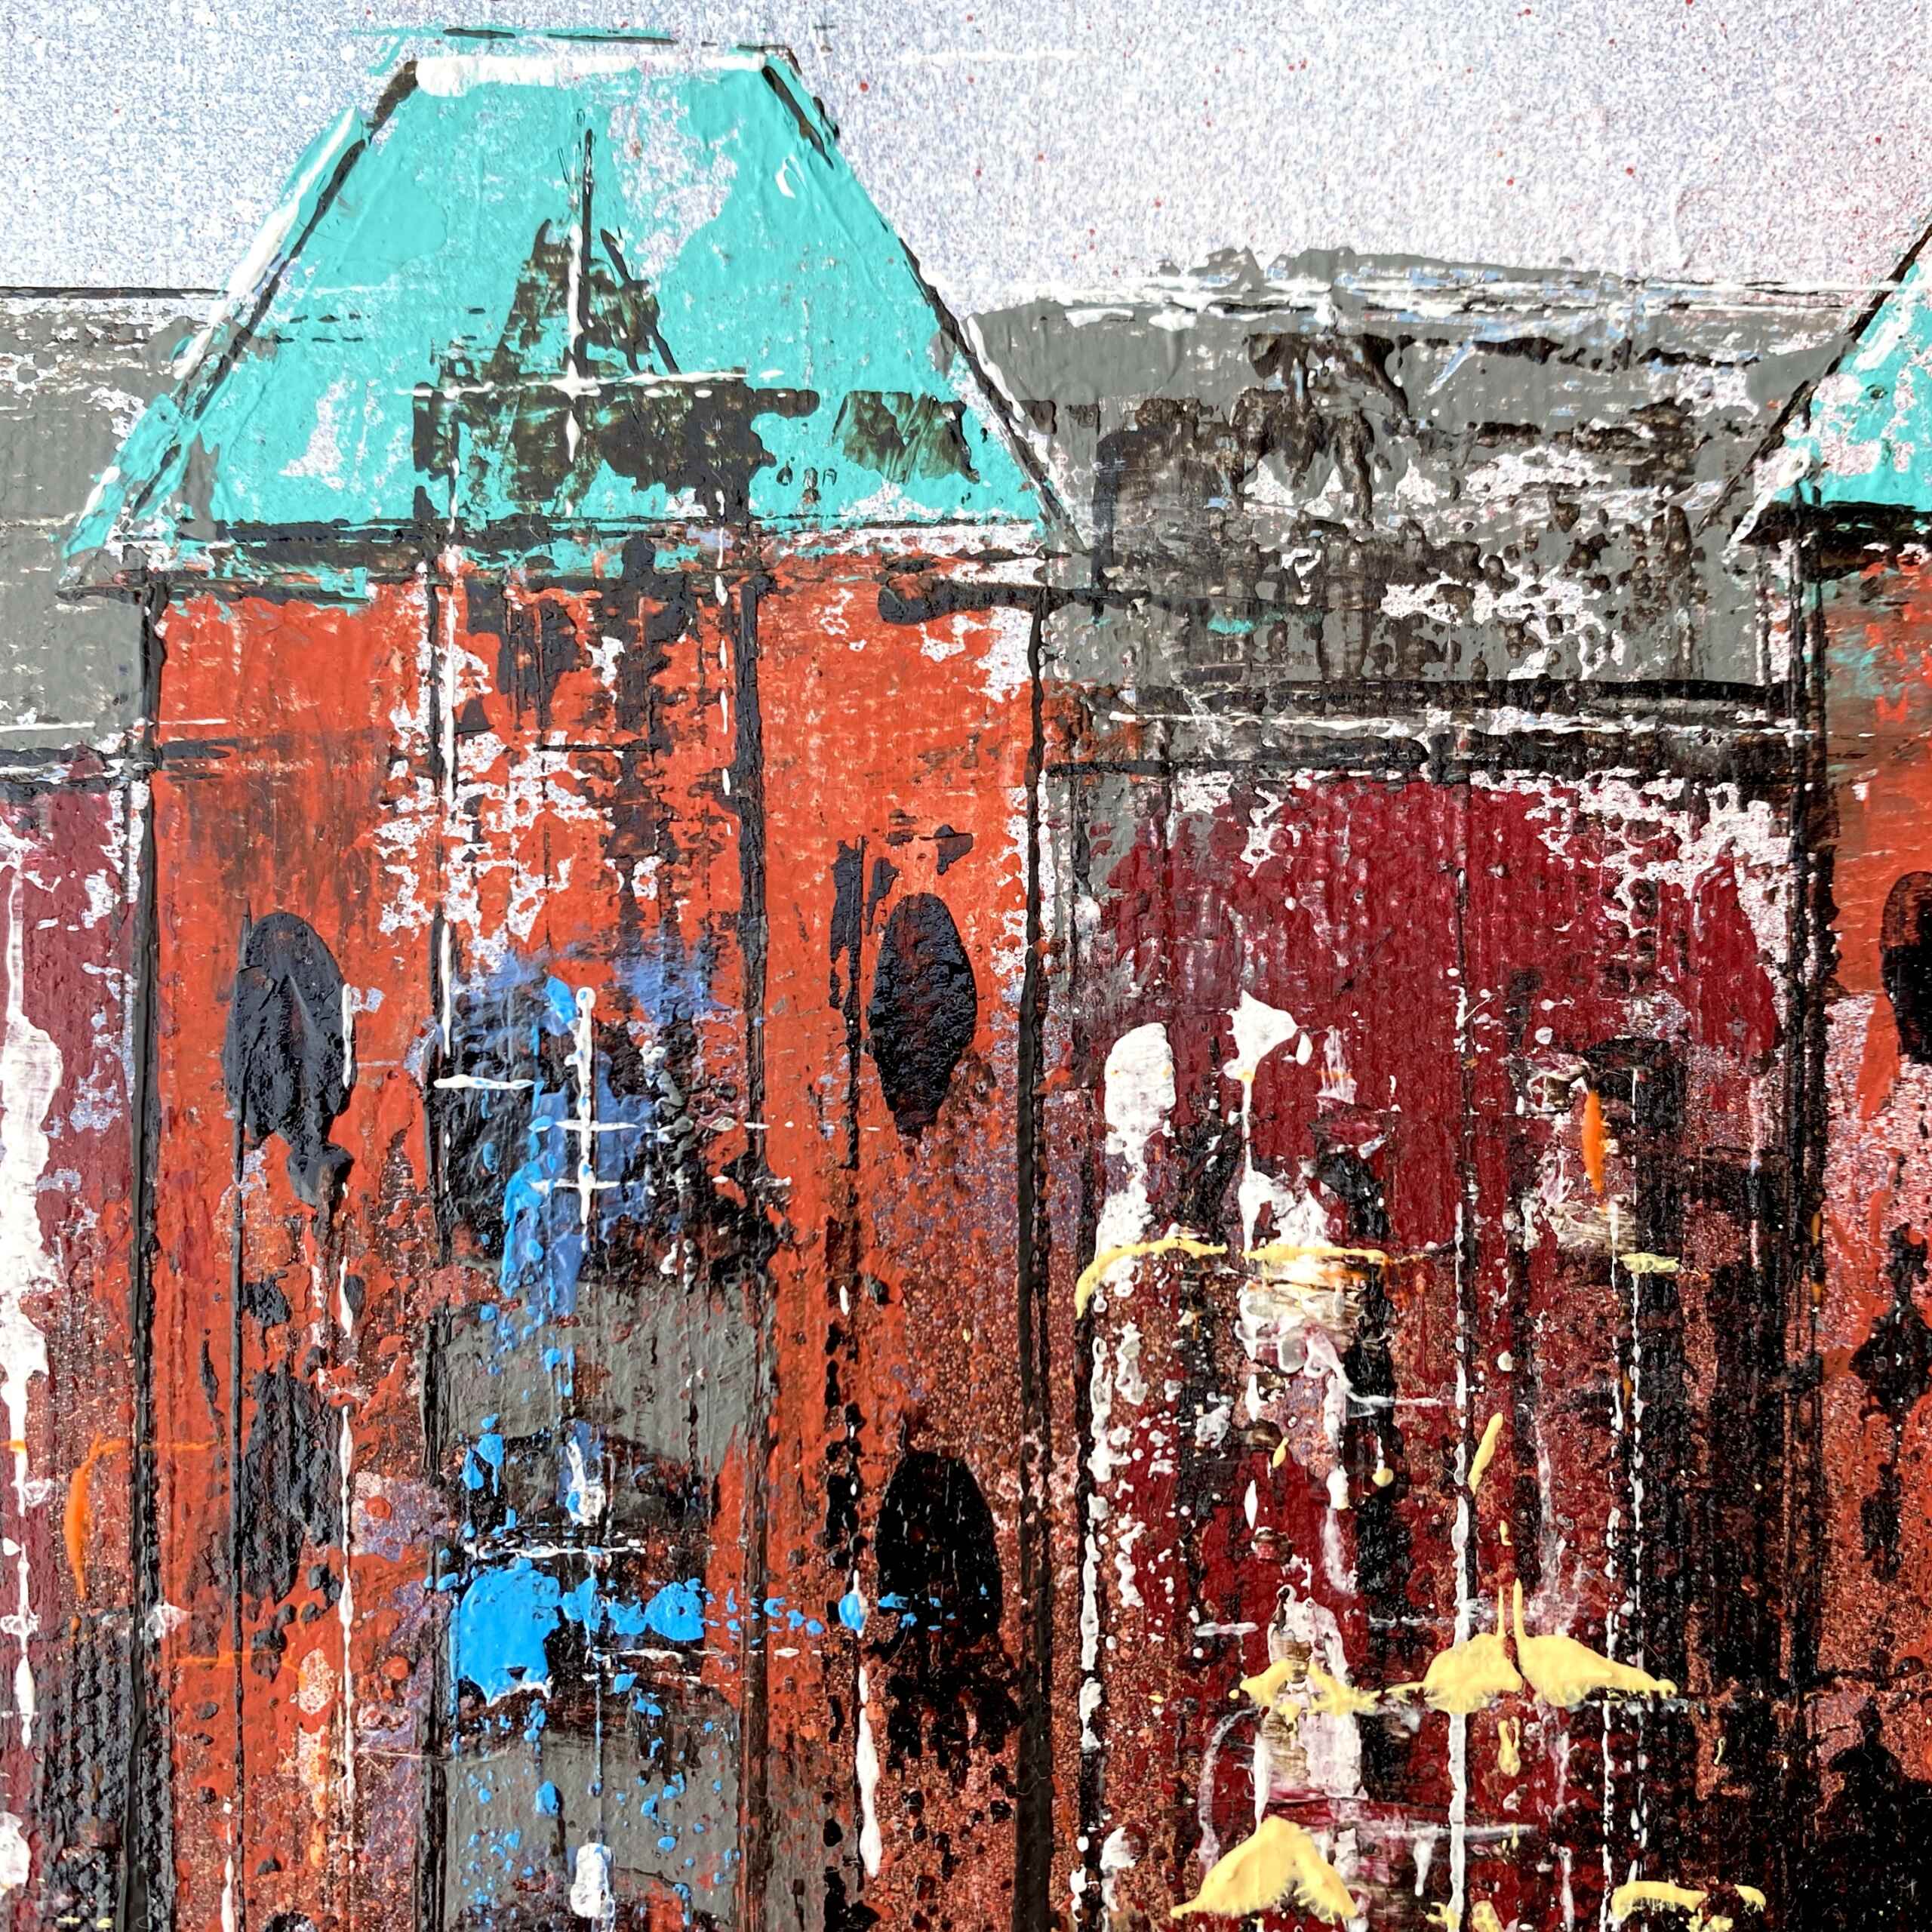 Detail of artwork "Speicherstadt" by Nina Groth